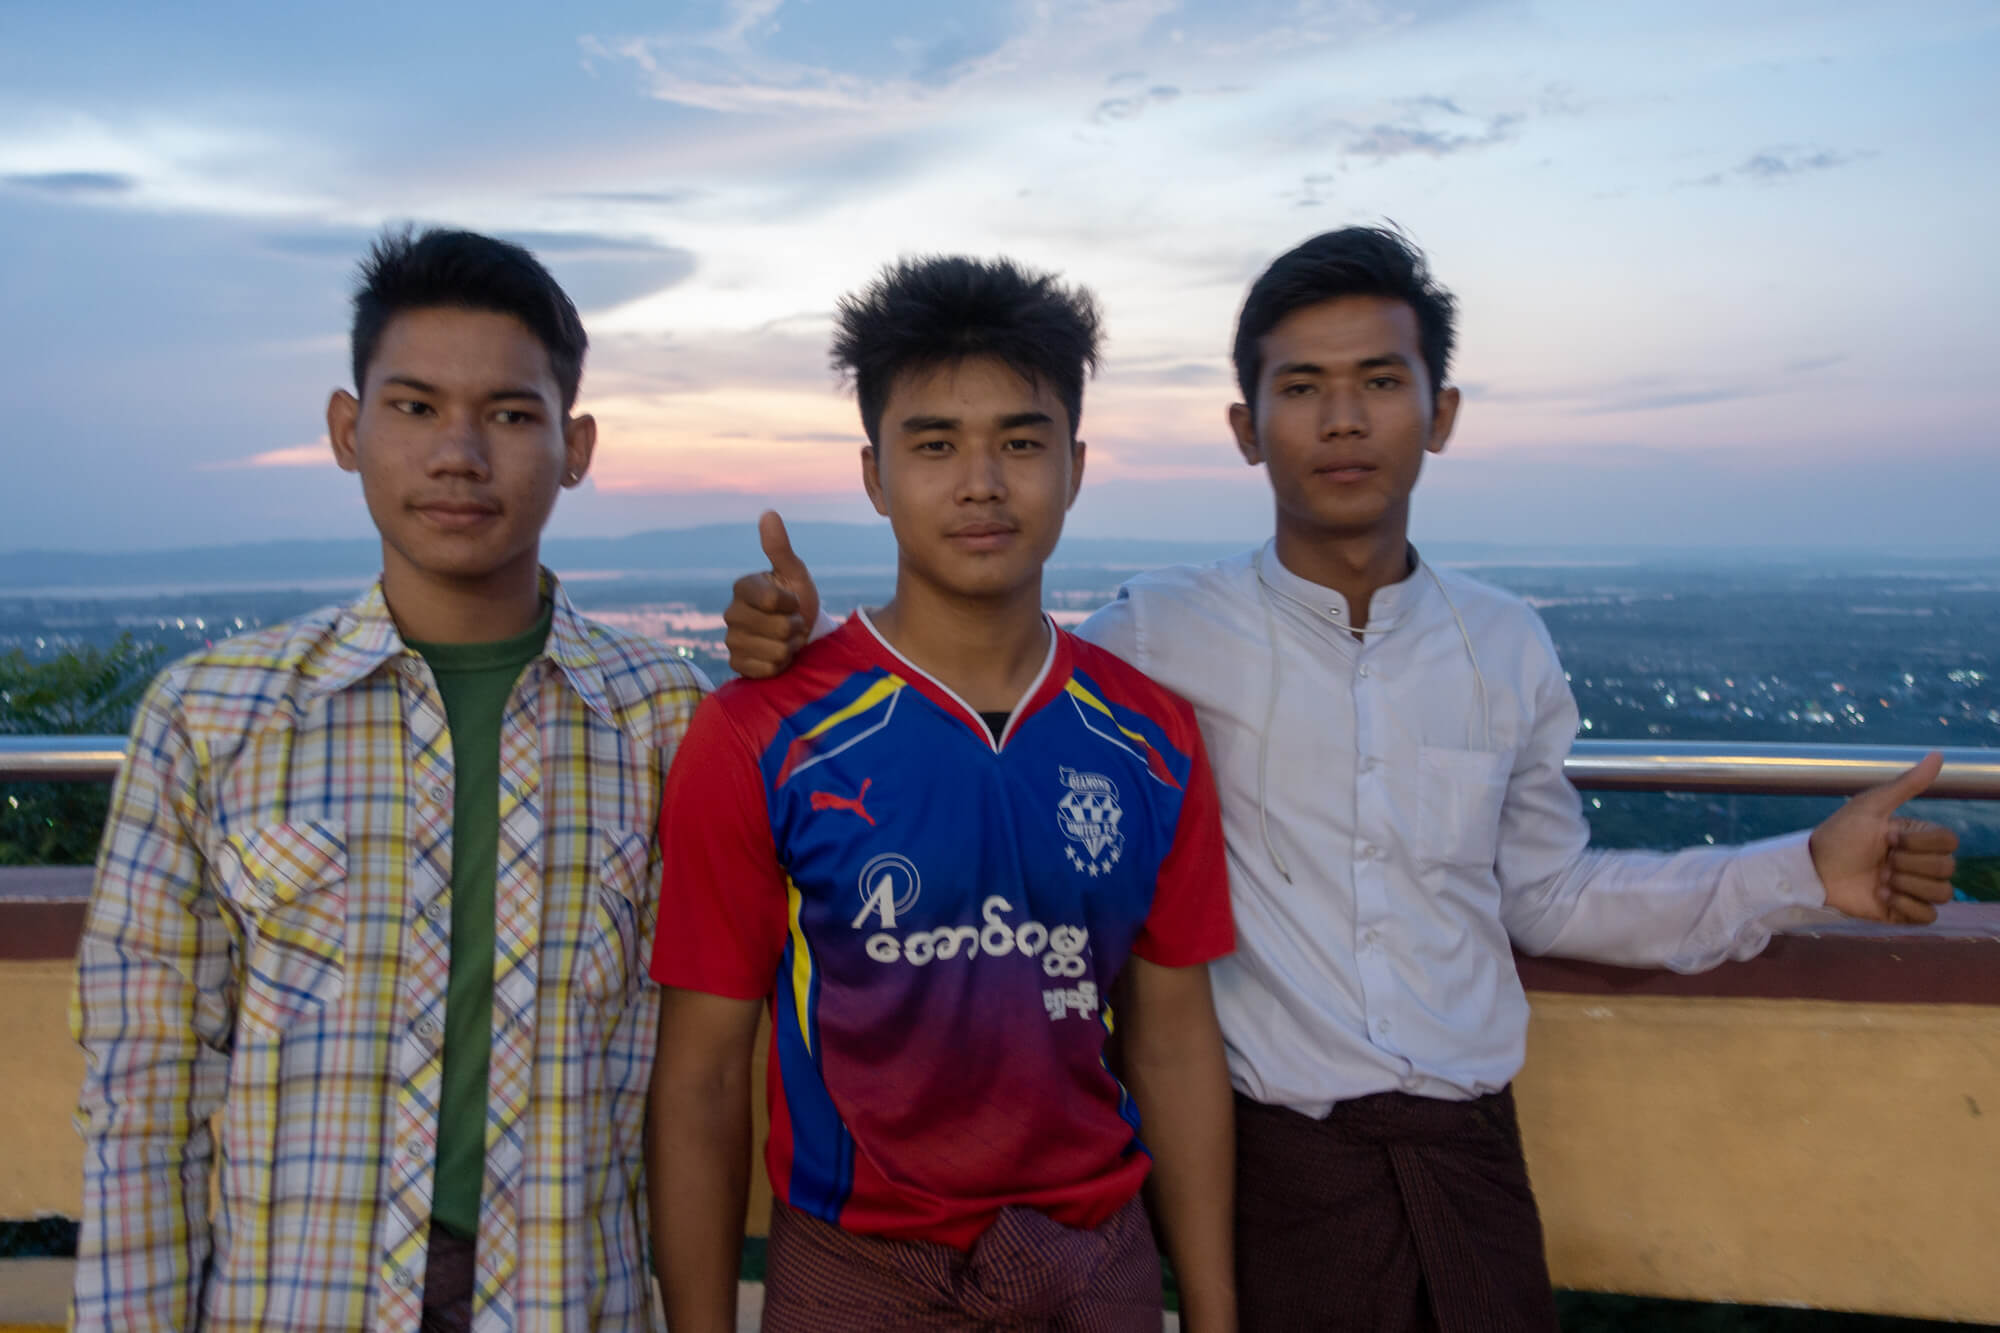 Les étudiants birmans devant la pagode Sutaungpyei sur les collines de Mandalay en Birmanie